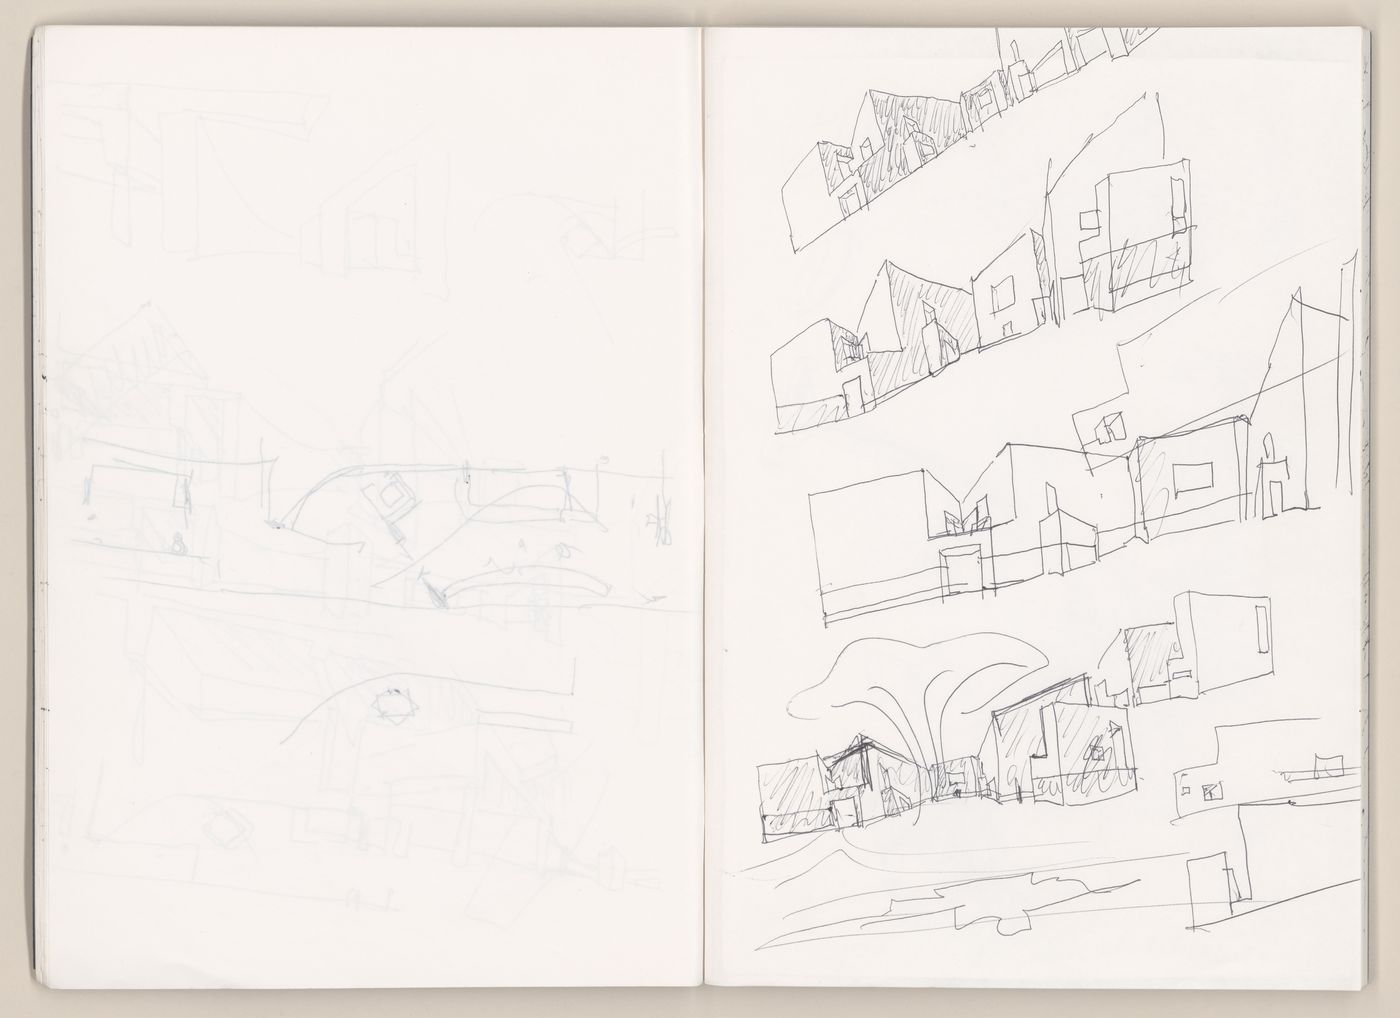 Sketchbook 416: Marco - Serralves - Metro Avenida